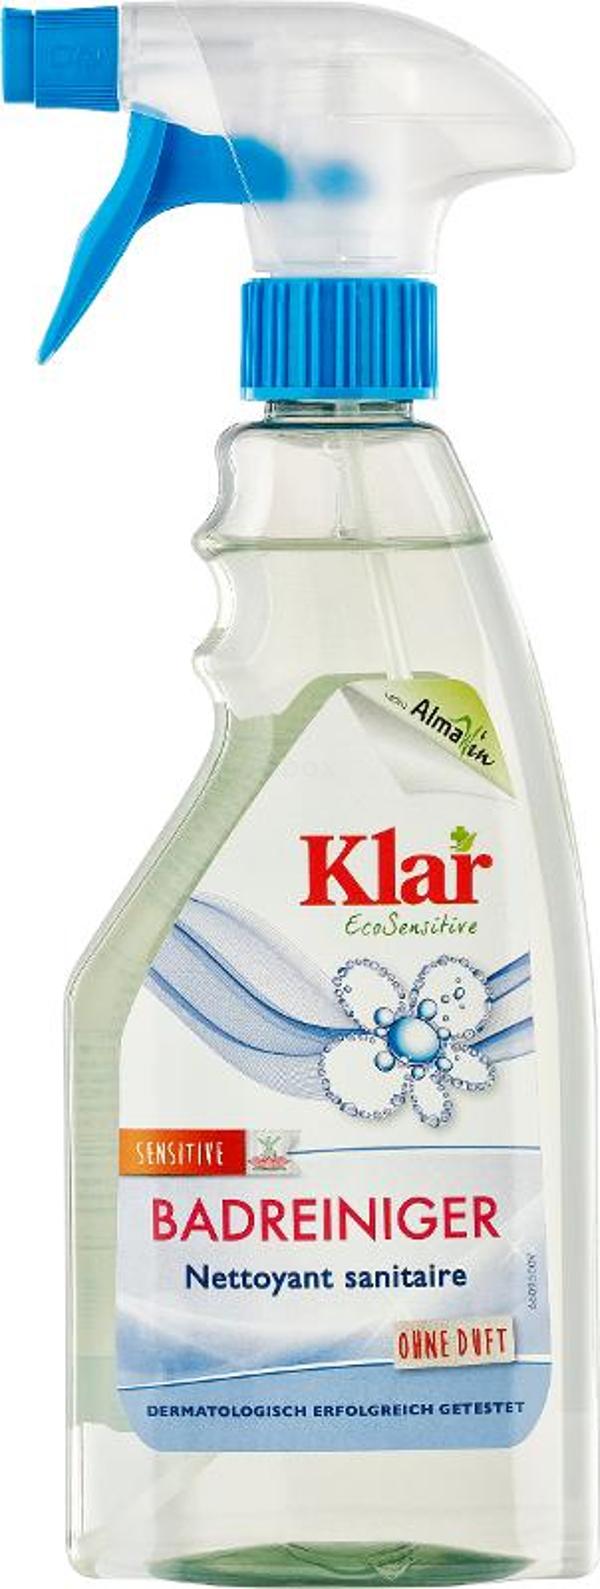 Produktfoto zu Bad Reiniger Sprayflasche